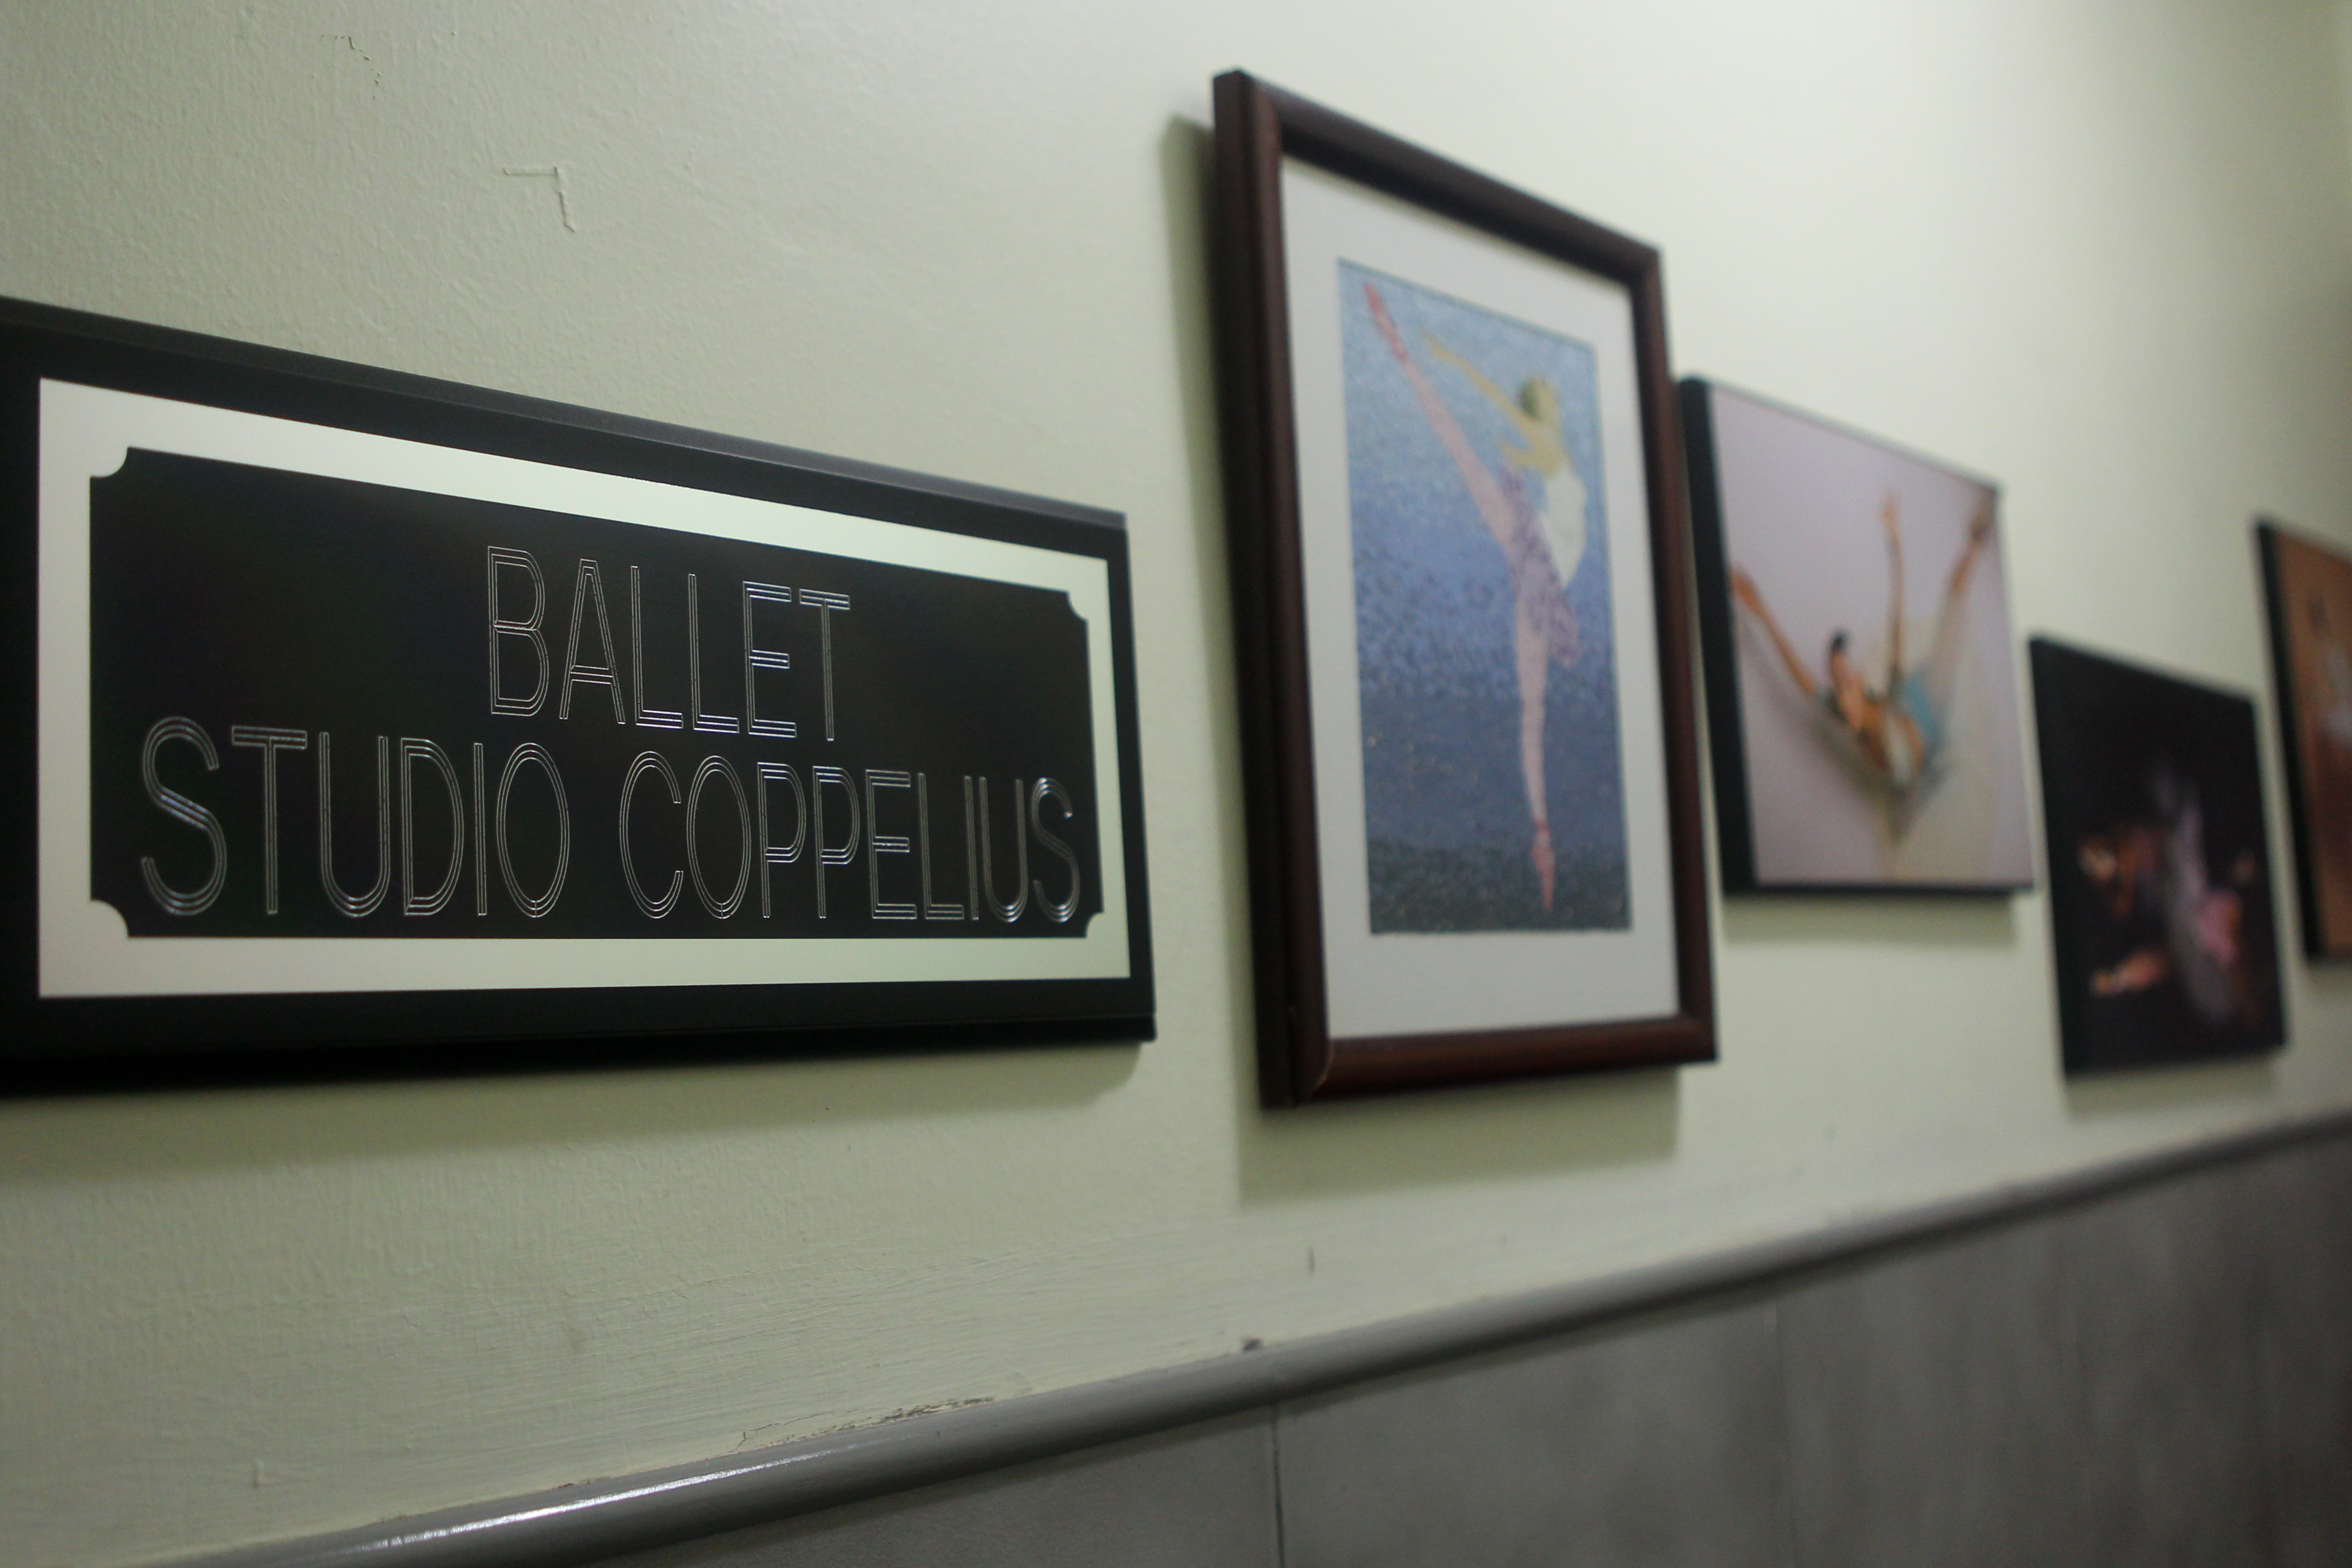 Aspecto de la academia Ballet Studio Coppelius. Ciudad de México, abril 20, 2021. 
Foto: Karina Hernández/Infobae